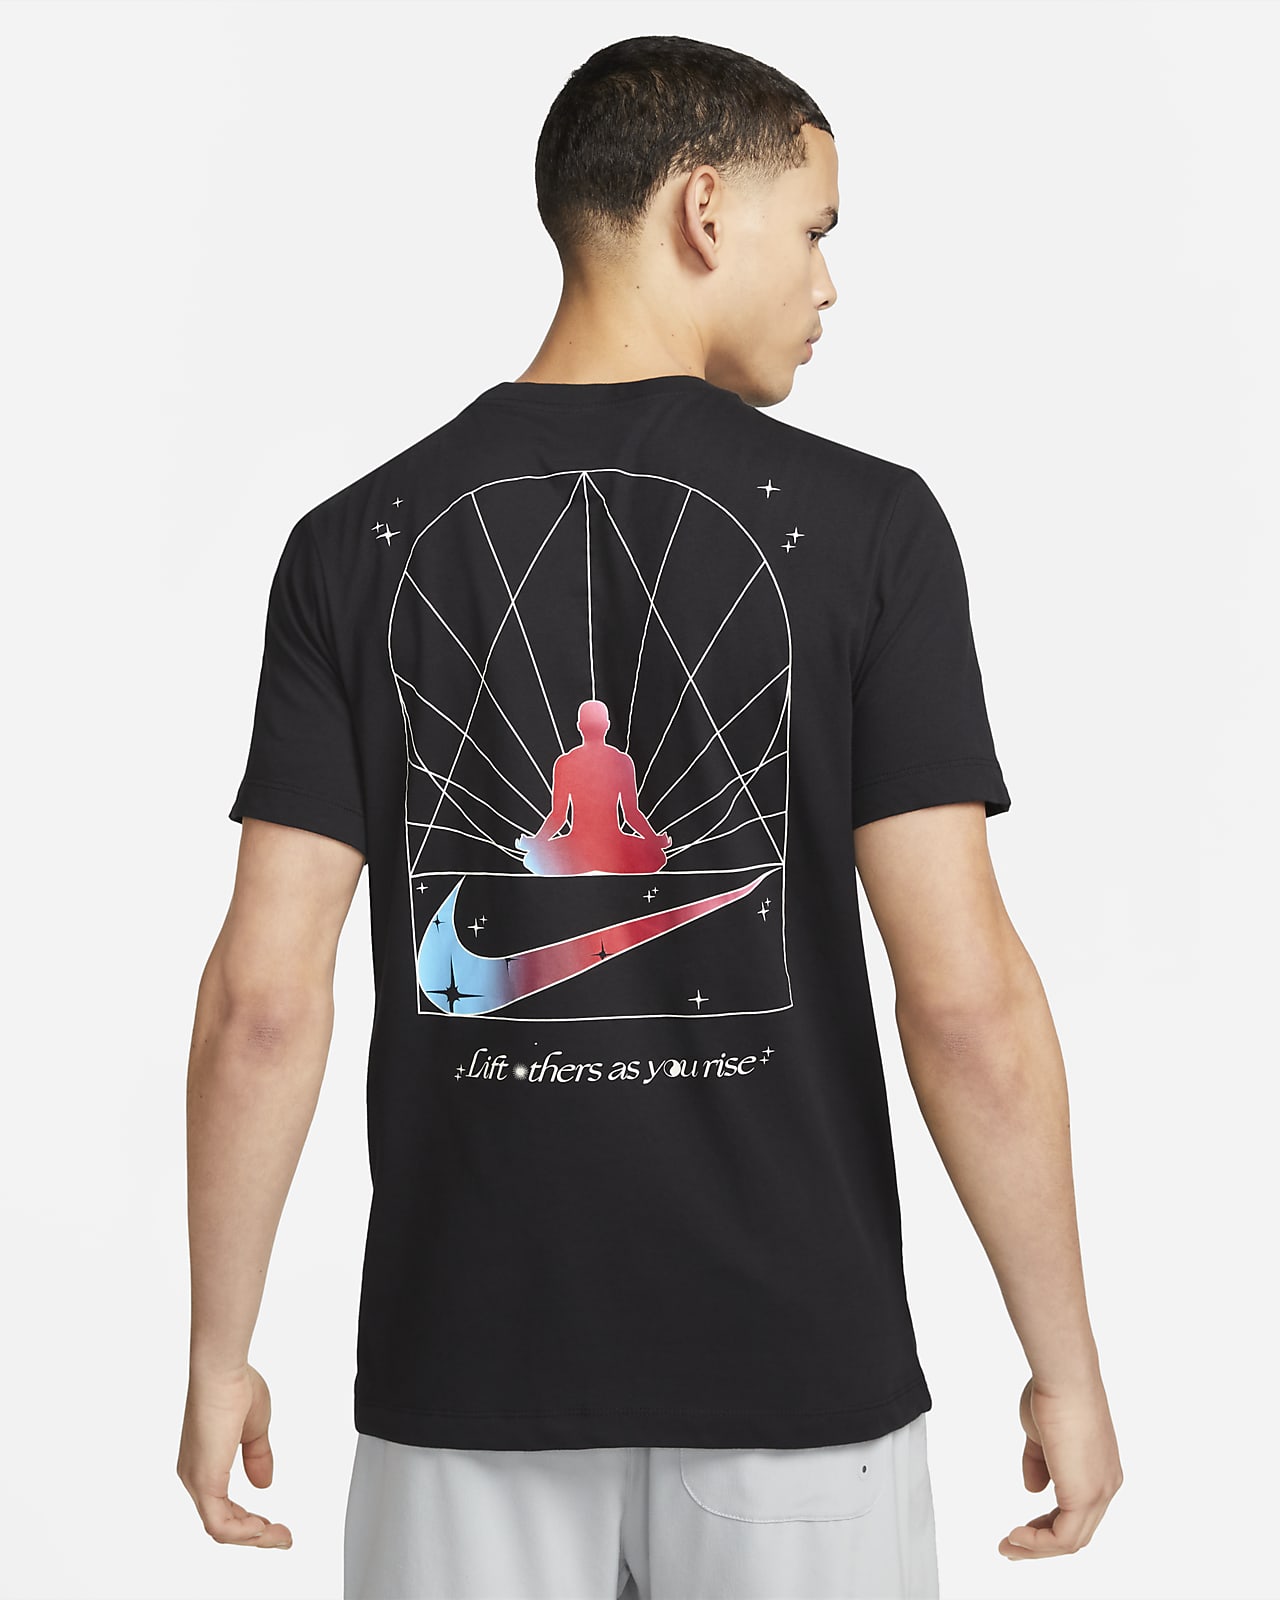 Nike Dri-FIT Men's Yoga T-Shirt.